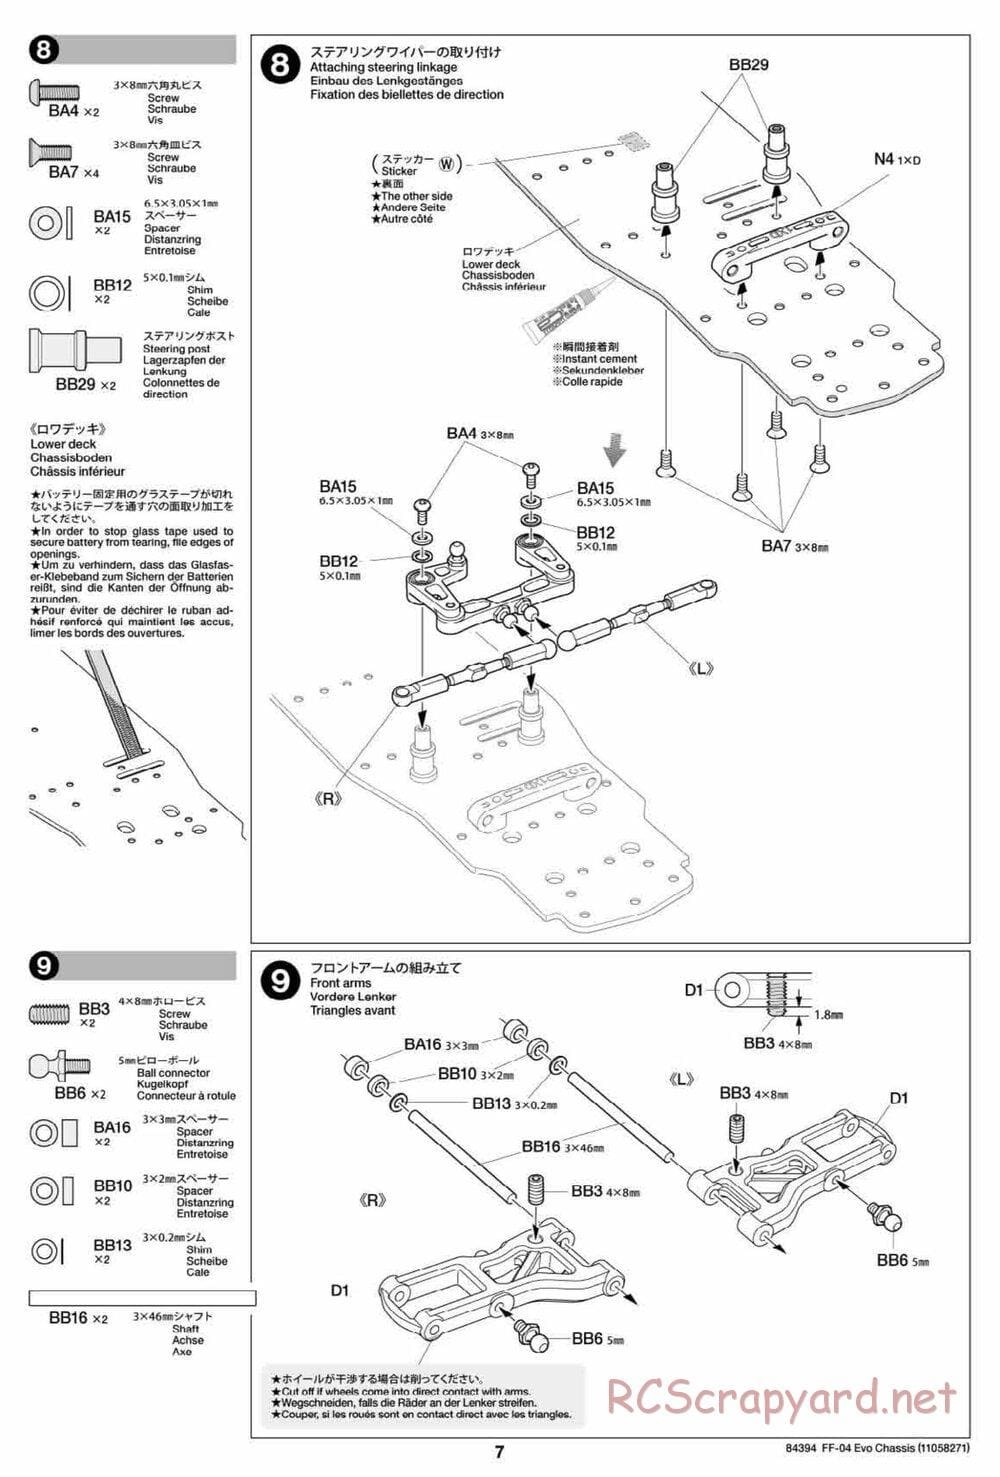 Tamiya - FF-04 Evo Chassis - Manual - Page 7